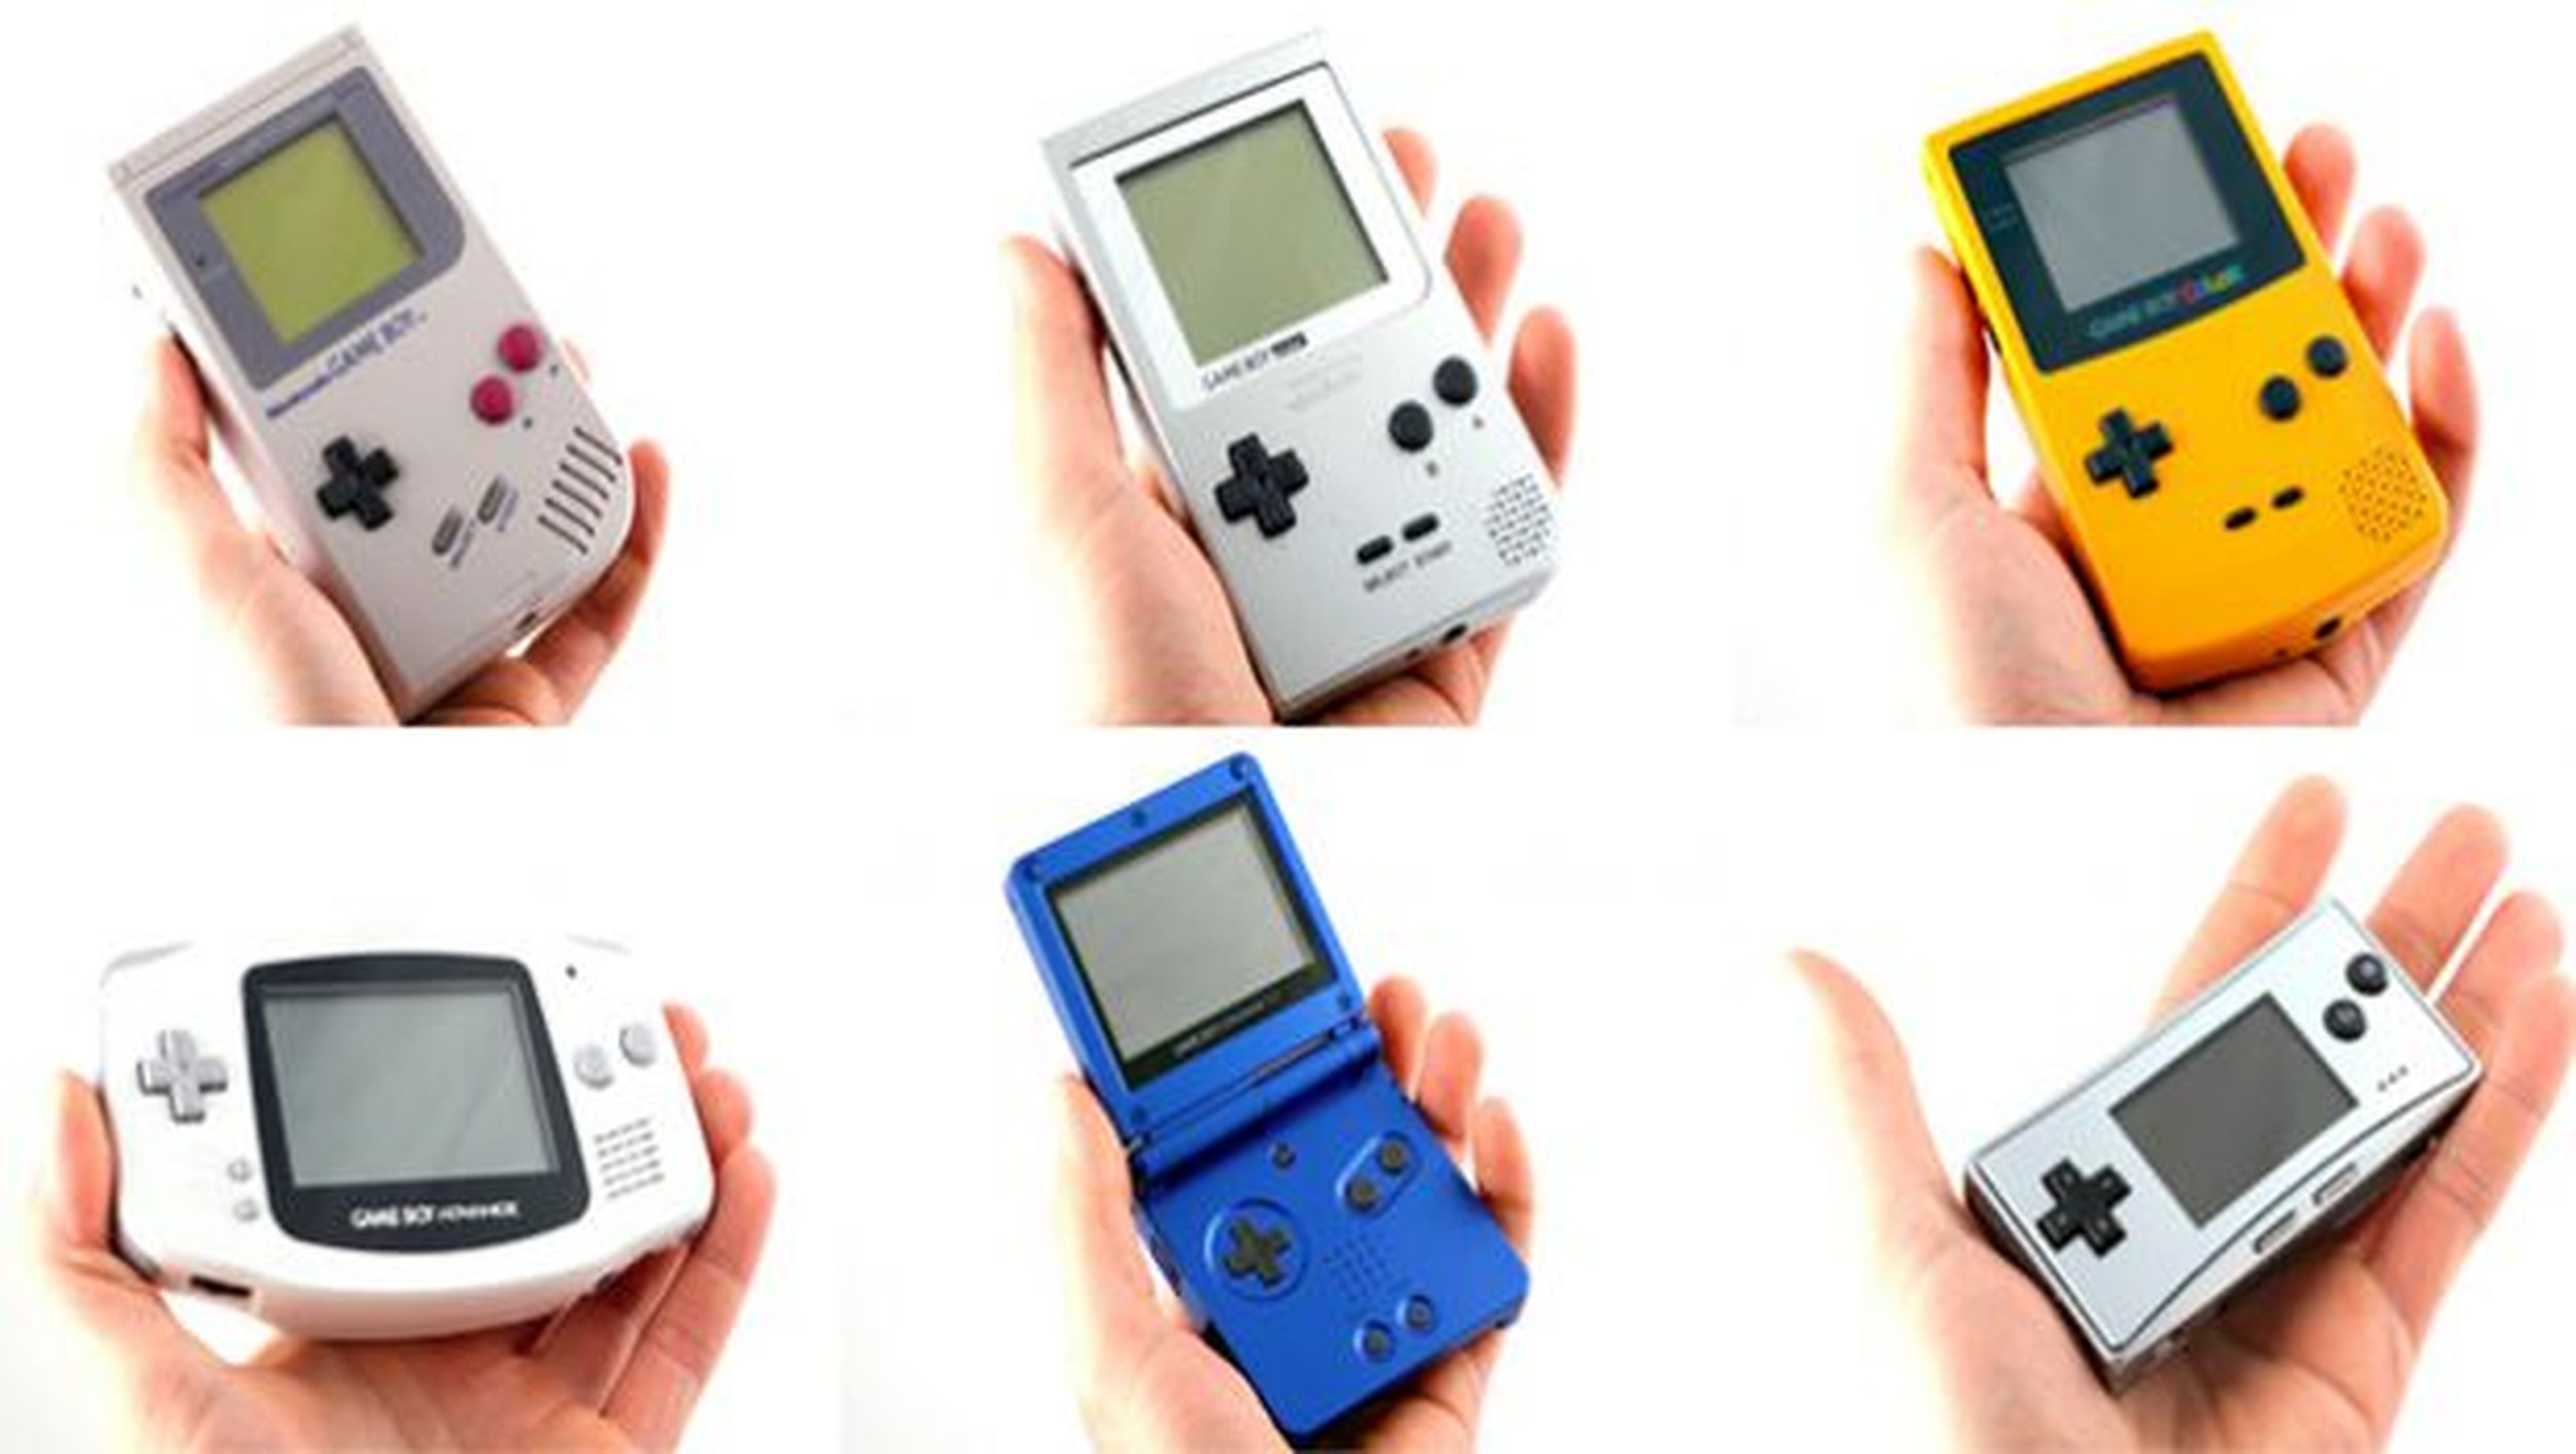 La Game Boy original evolucionó a nuevas versiones más pequeñas, con hardware mejorado o con pantallas más grandes y a color